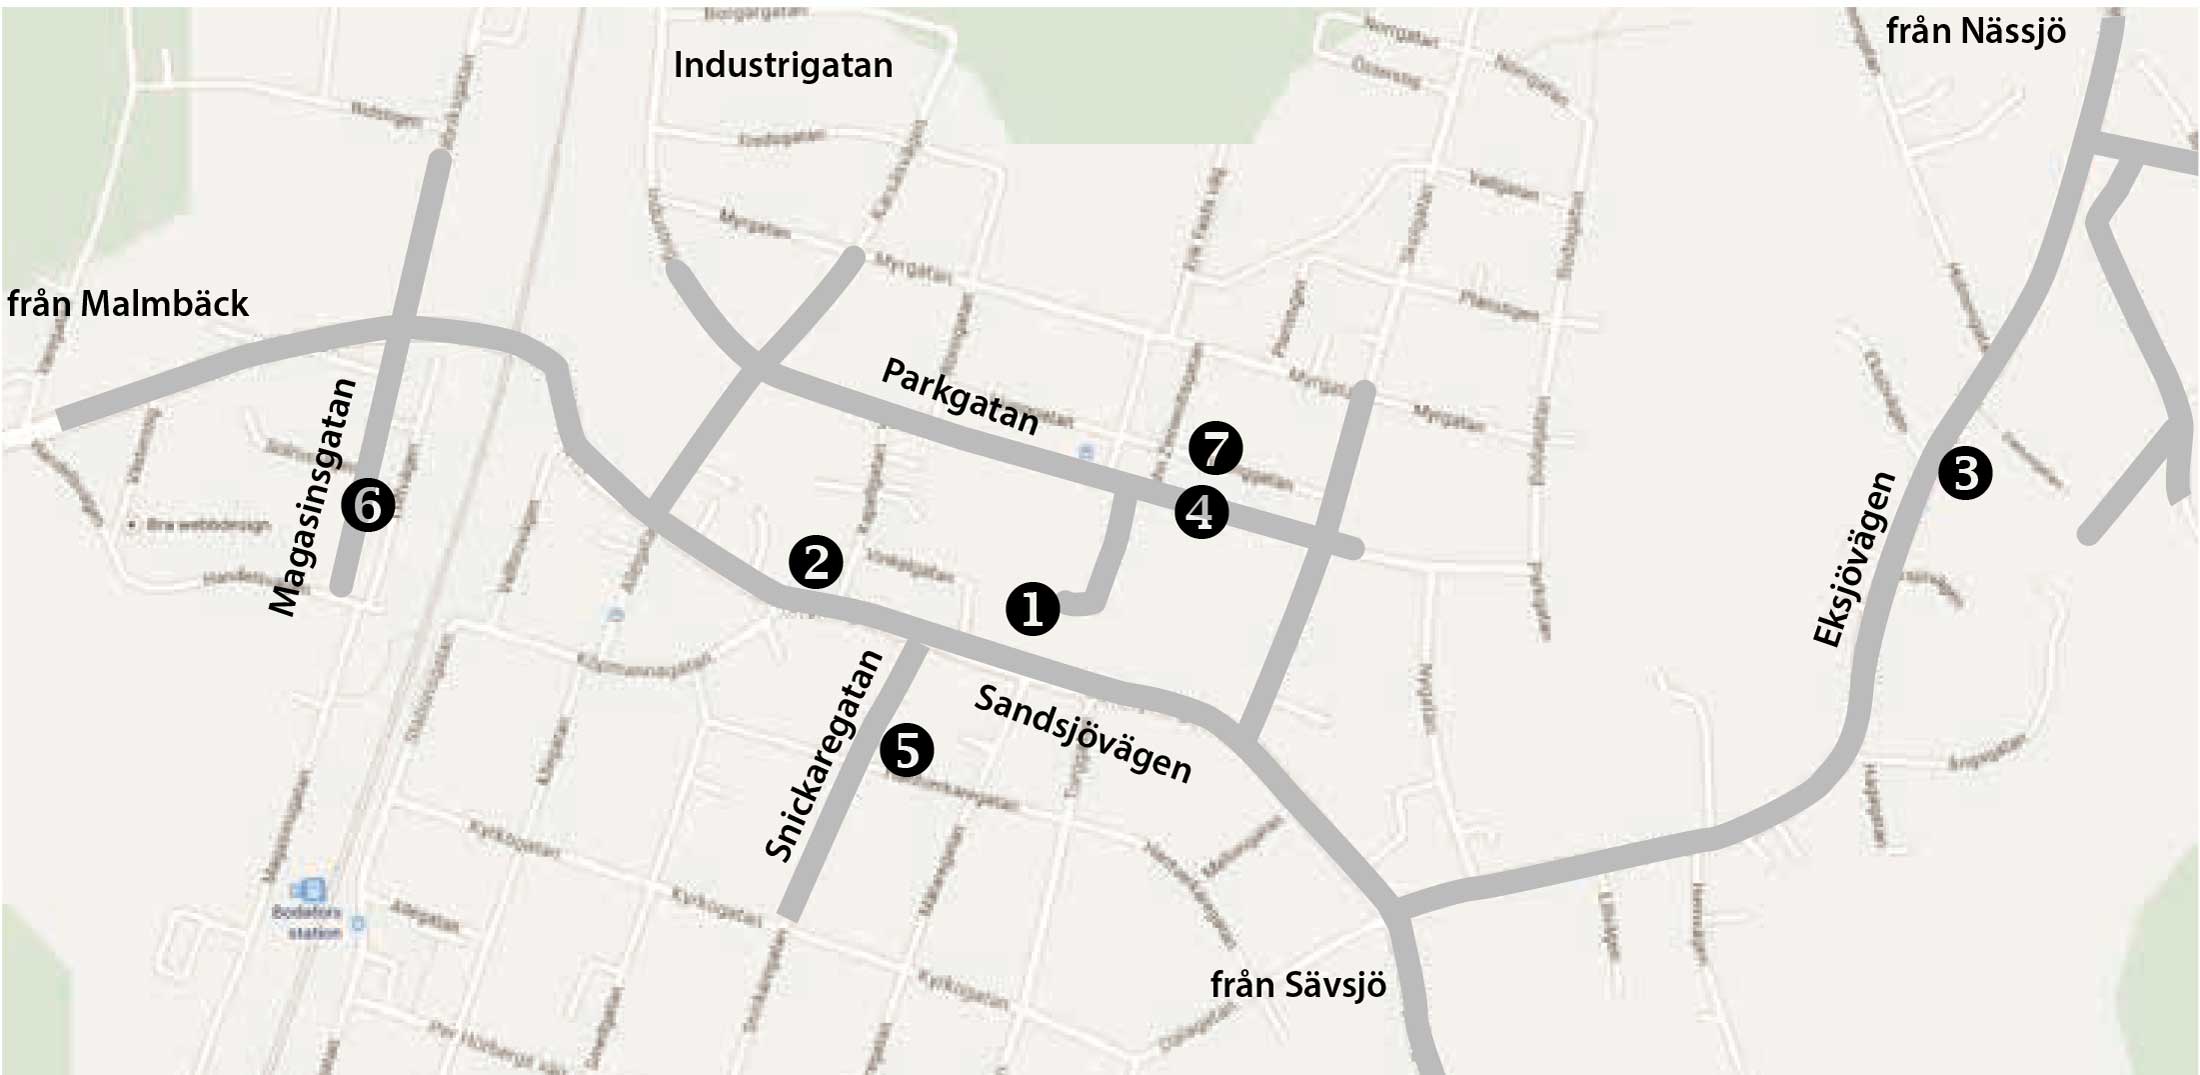 Karta över Bodafors där viktiga ställen med aktiviteter är markerade